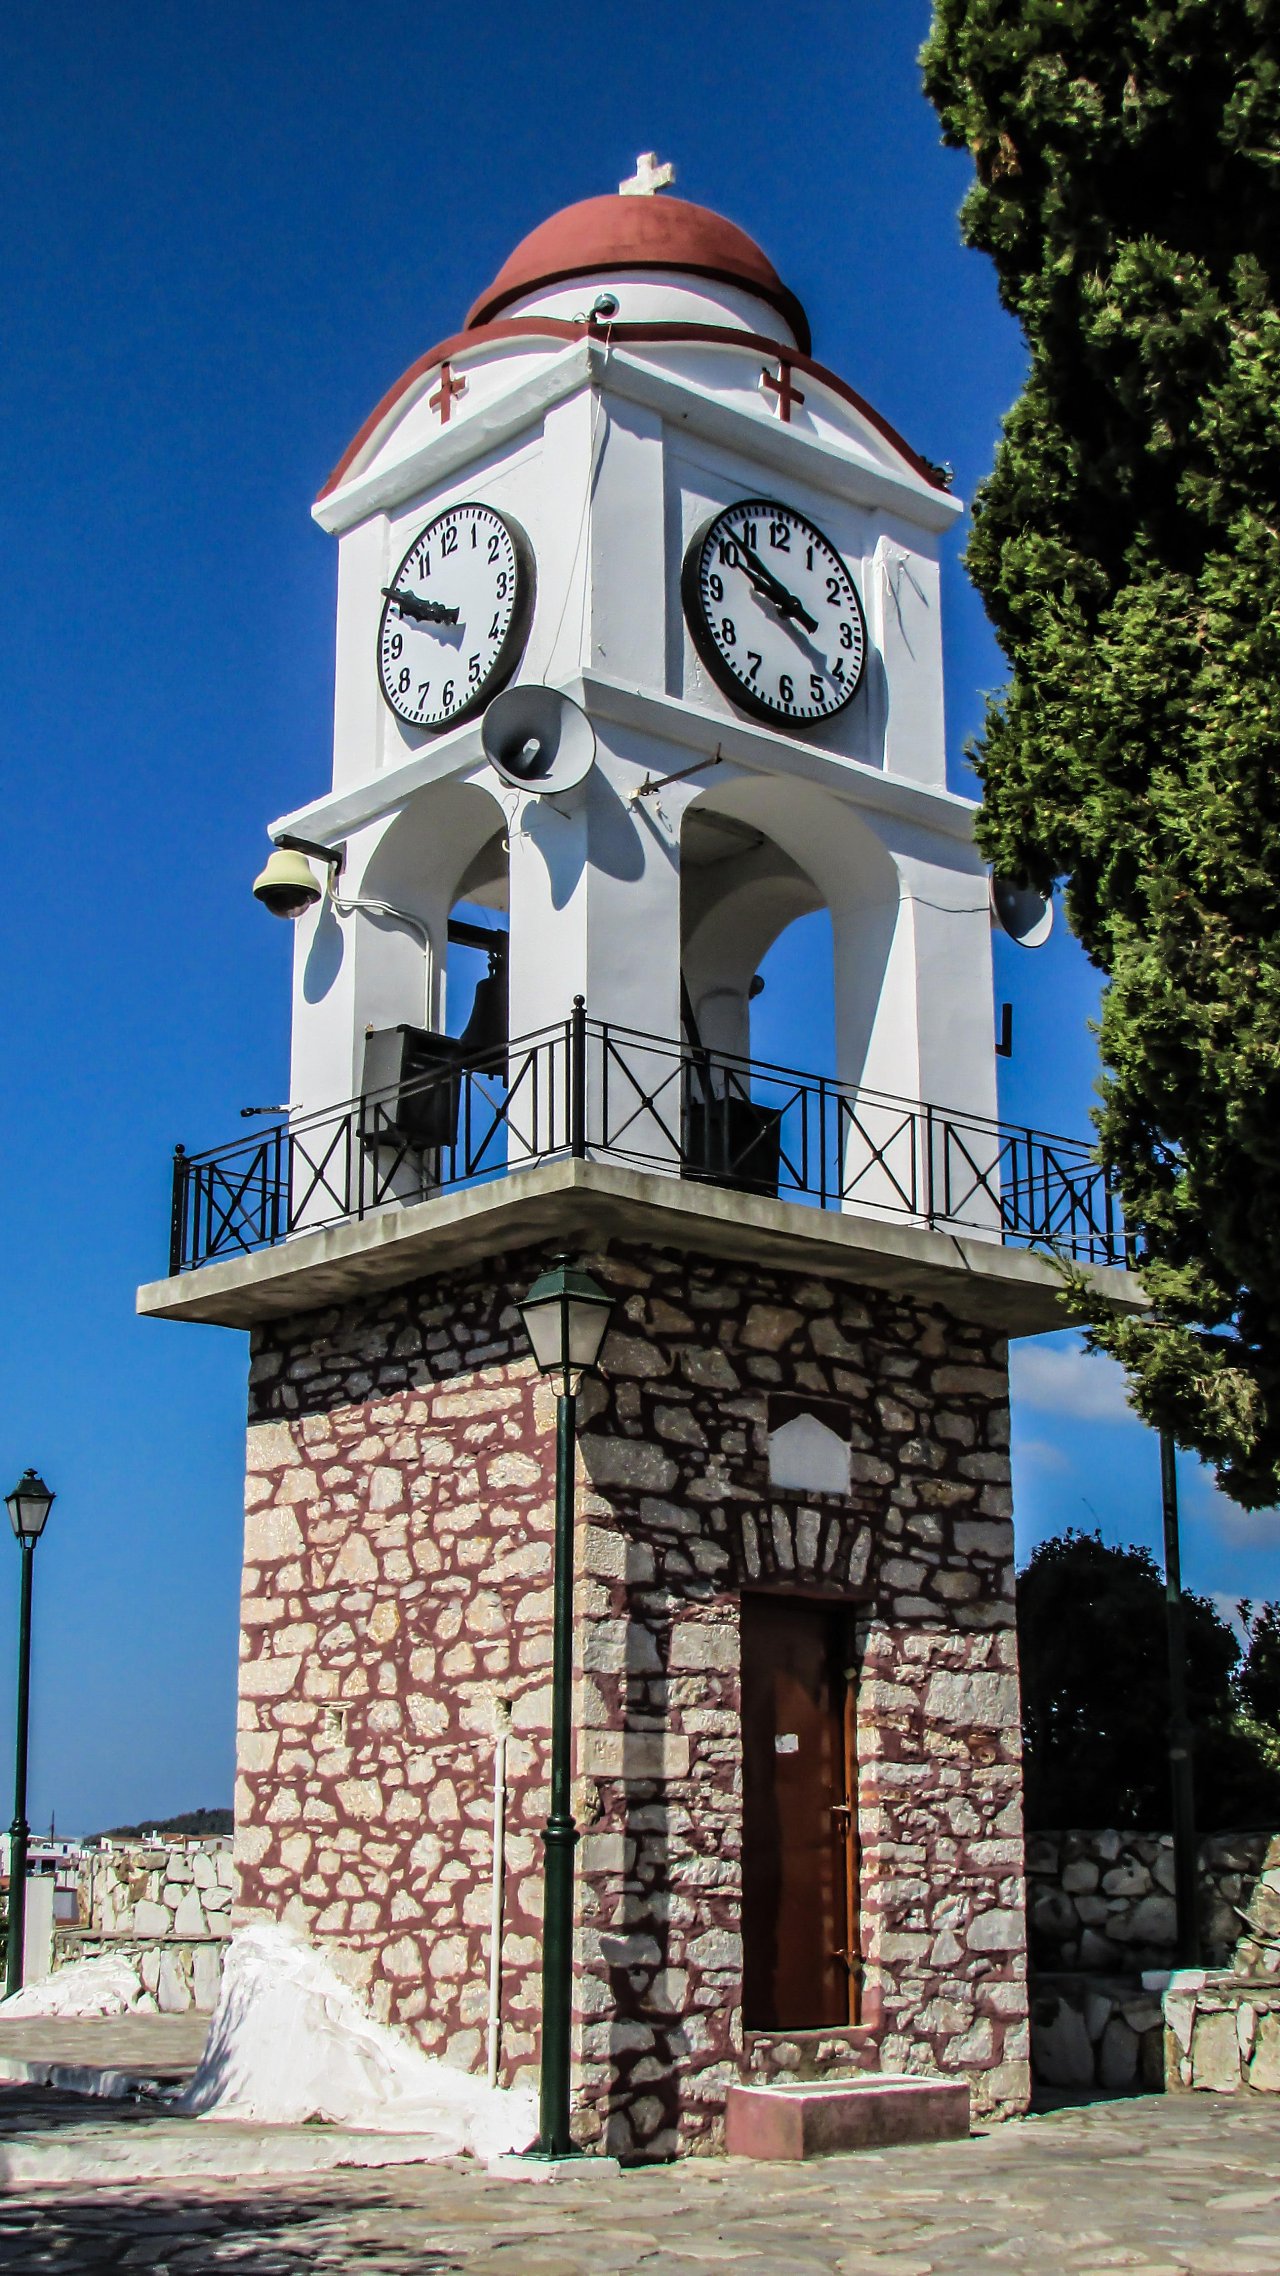 Agios Nikolaos Church and Clock Tower, Lalaria Beach, Greece Beaches